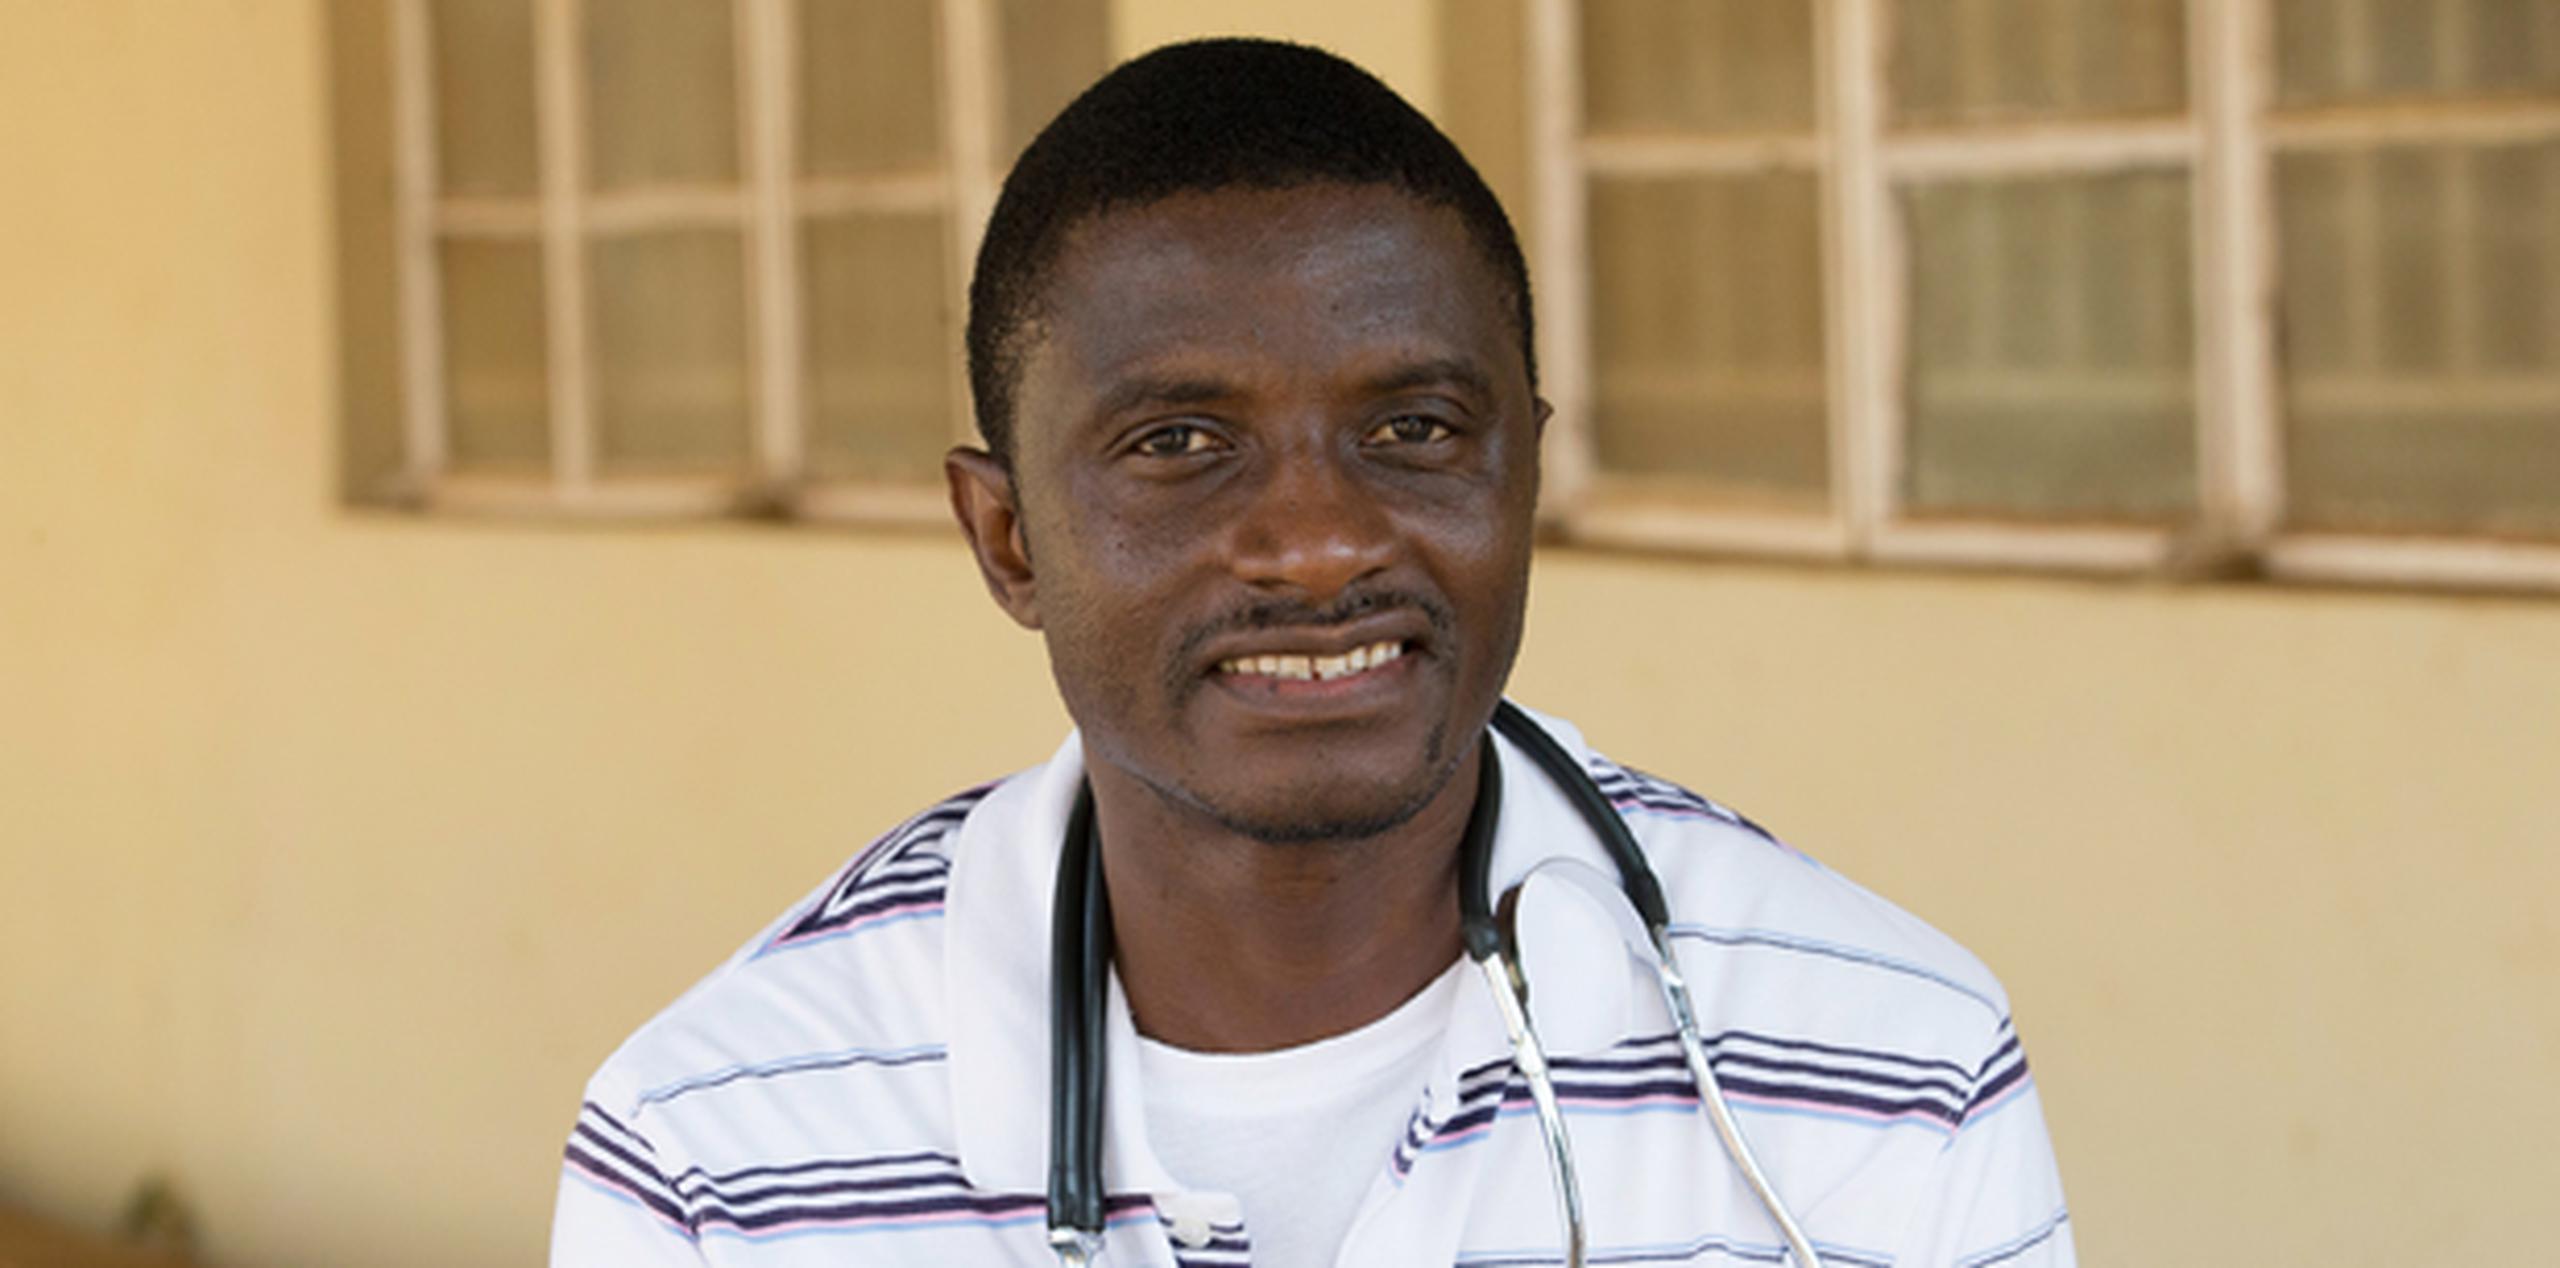 El doctor Martin Salia, ciudadano de Sierra Leona, falleció a consecuencia de la enfermedad, informó el lunes el Centro Médico de Nebraska en un comunicado de prensa. (AP)